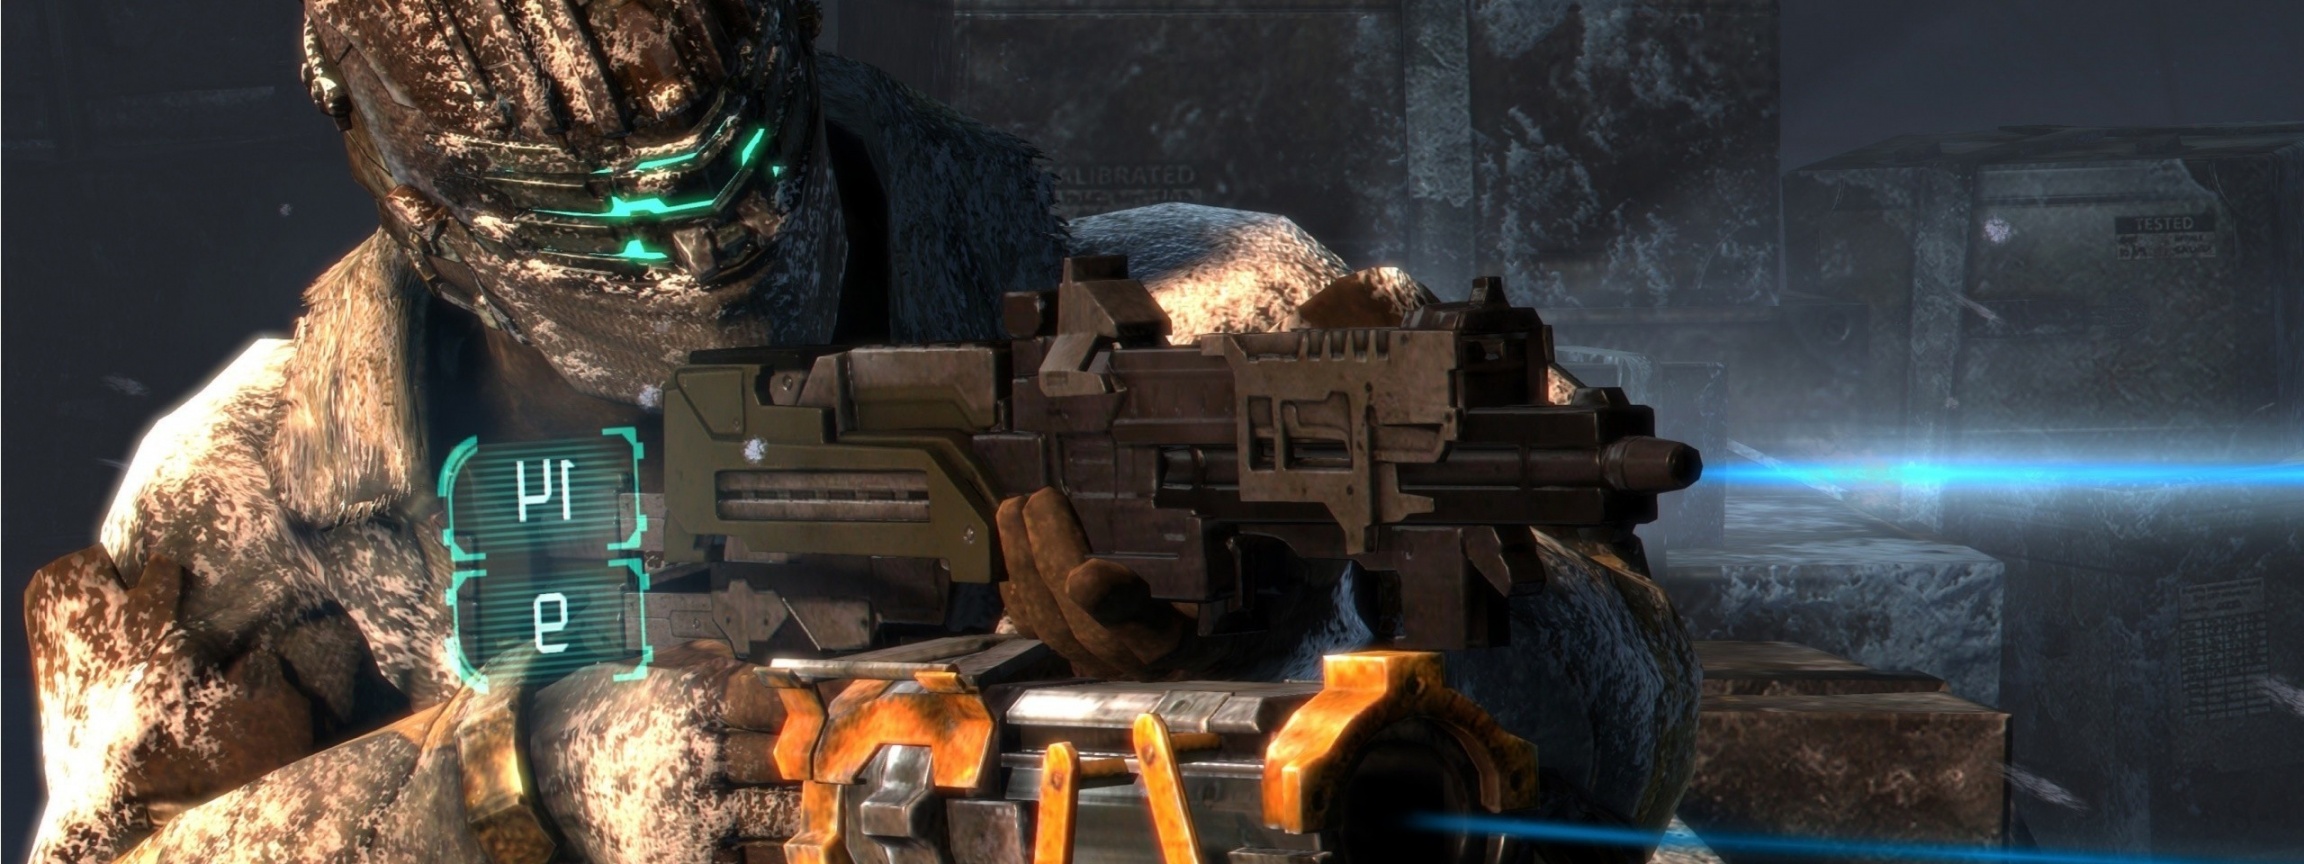 Dead Space 3 Shooter Laser Gun Isaac Clarke